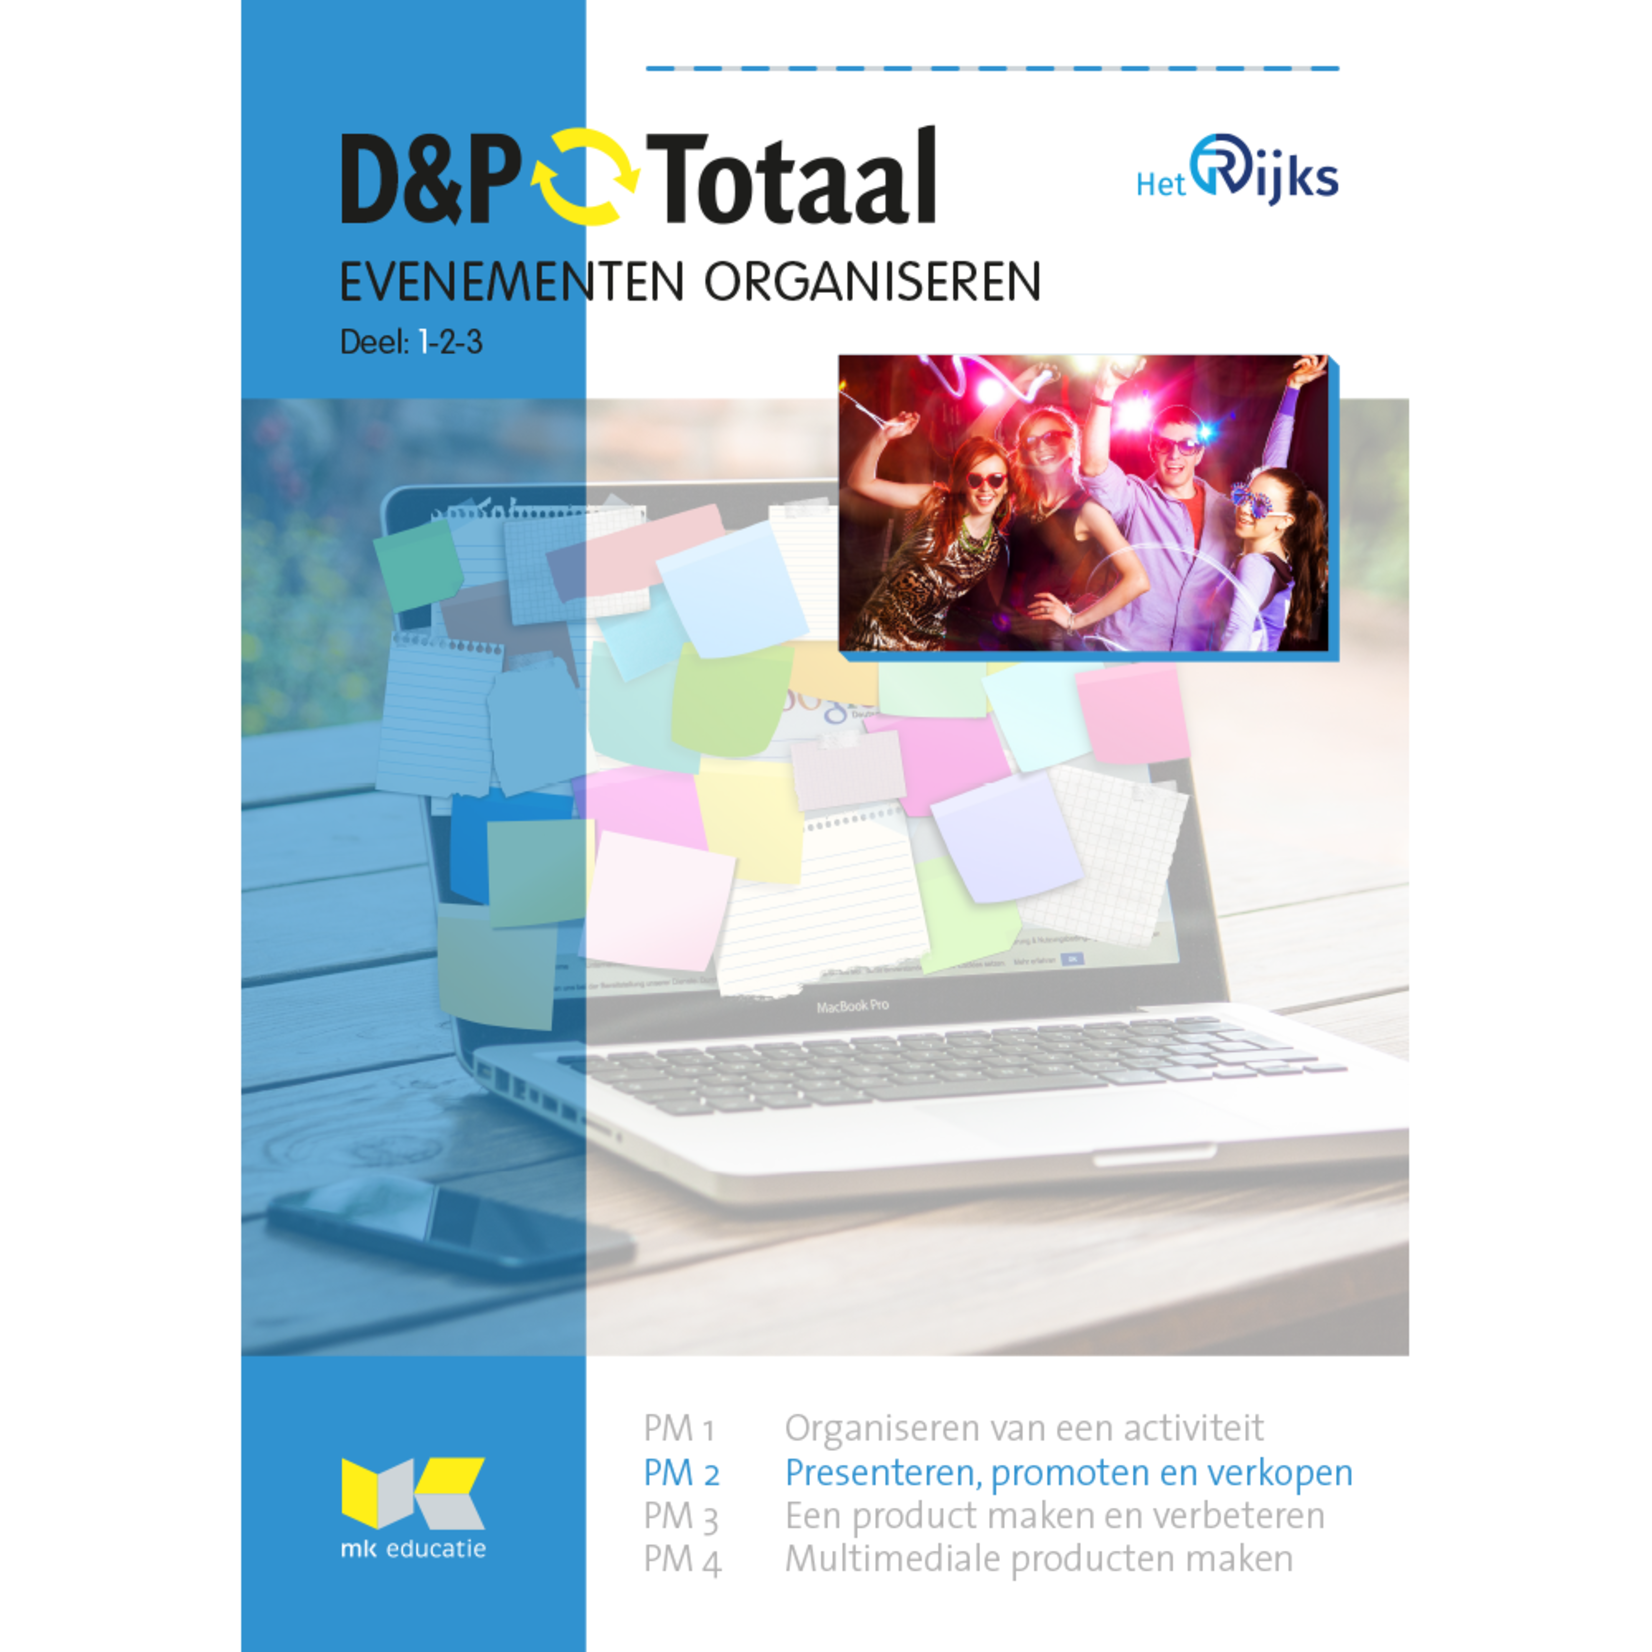 D&P-Totaal - HBR Evenementen organiseren (PM2/1820)